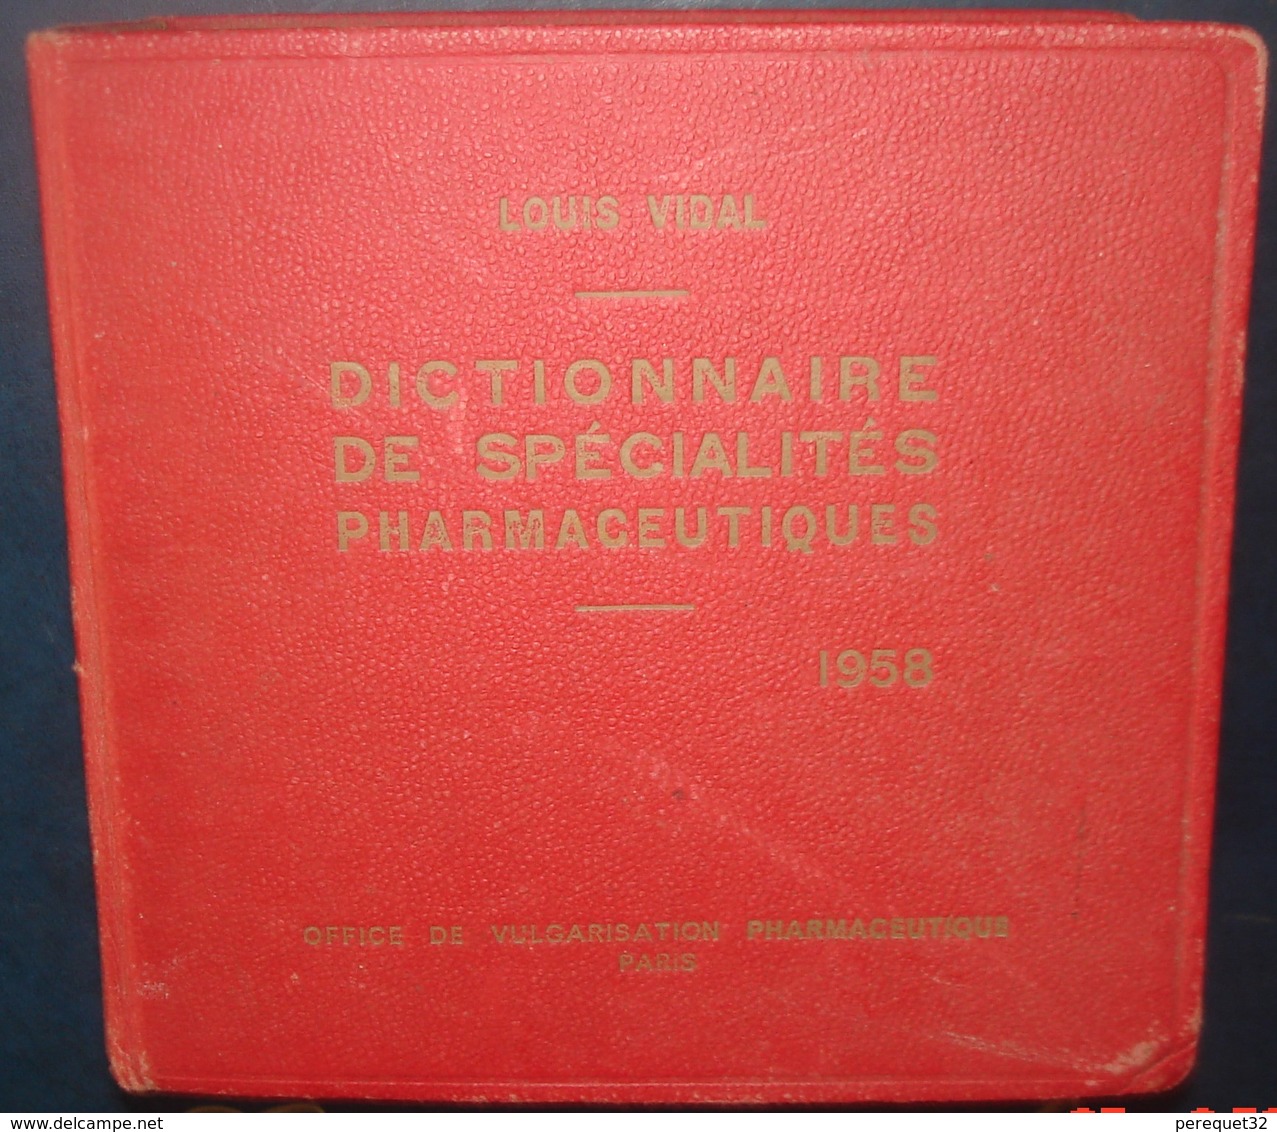 Dictionnaire De Spécialités Pharmaceutiques.Louis VIDAL.1958.3506 Pages +96 - Dictionnaires